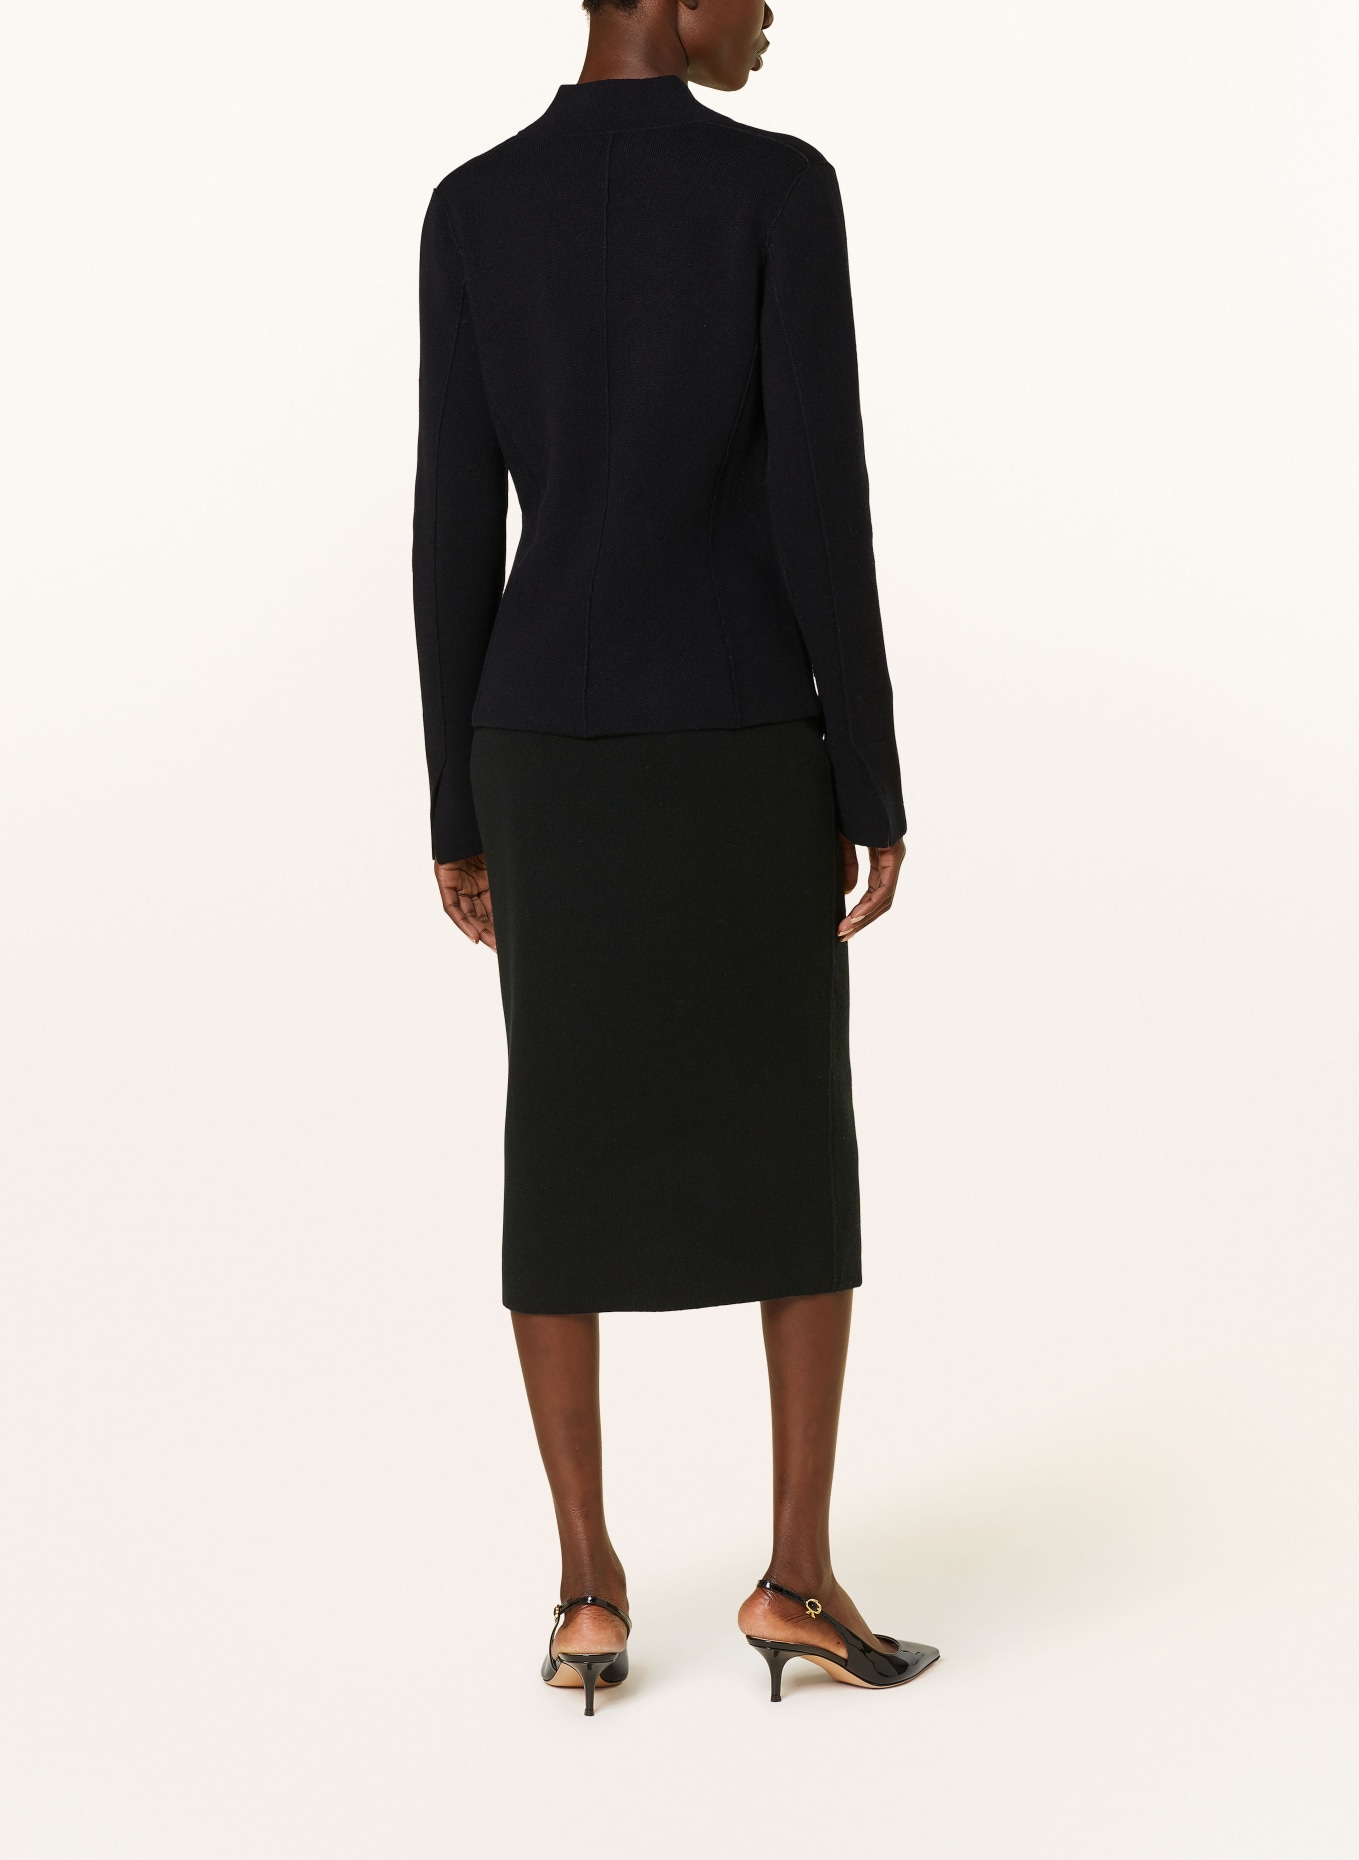 IRIS von ARNIM Knit skirt ABELLA in cashmere, Color: BLACK (Image 3)